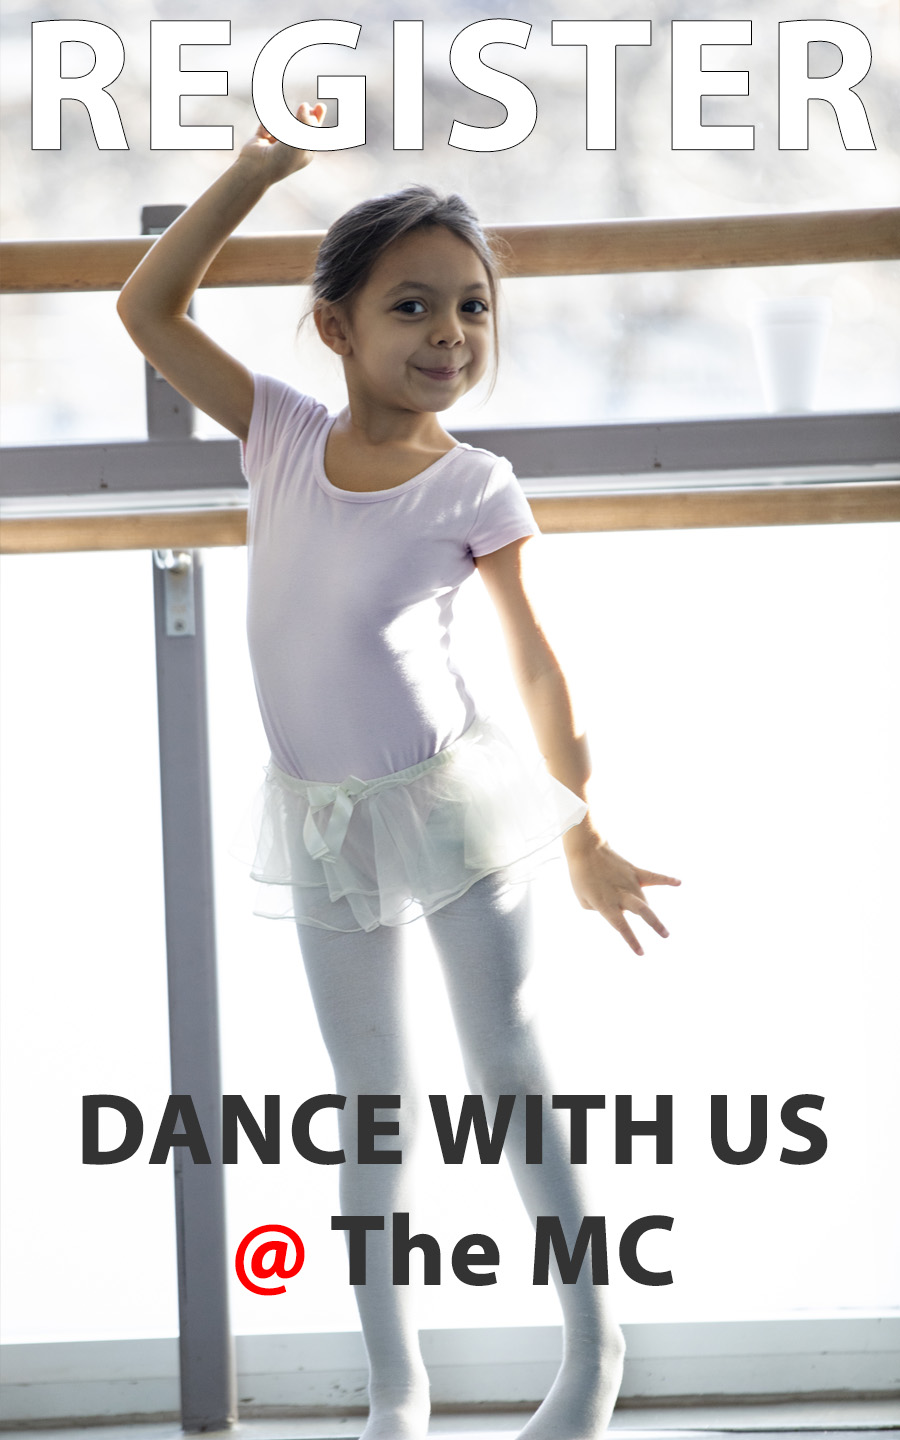 Company | E Movement Center for Dance Education